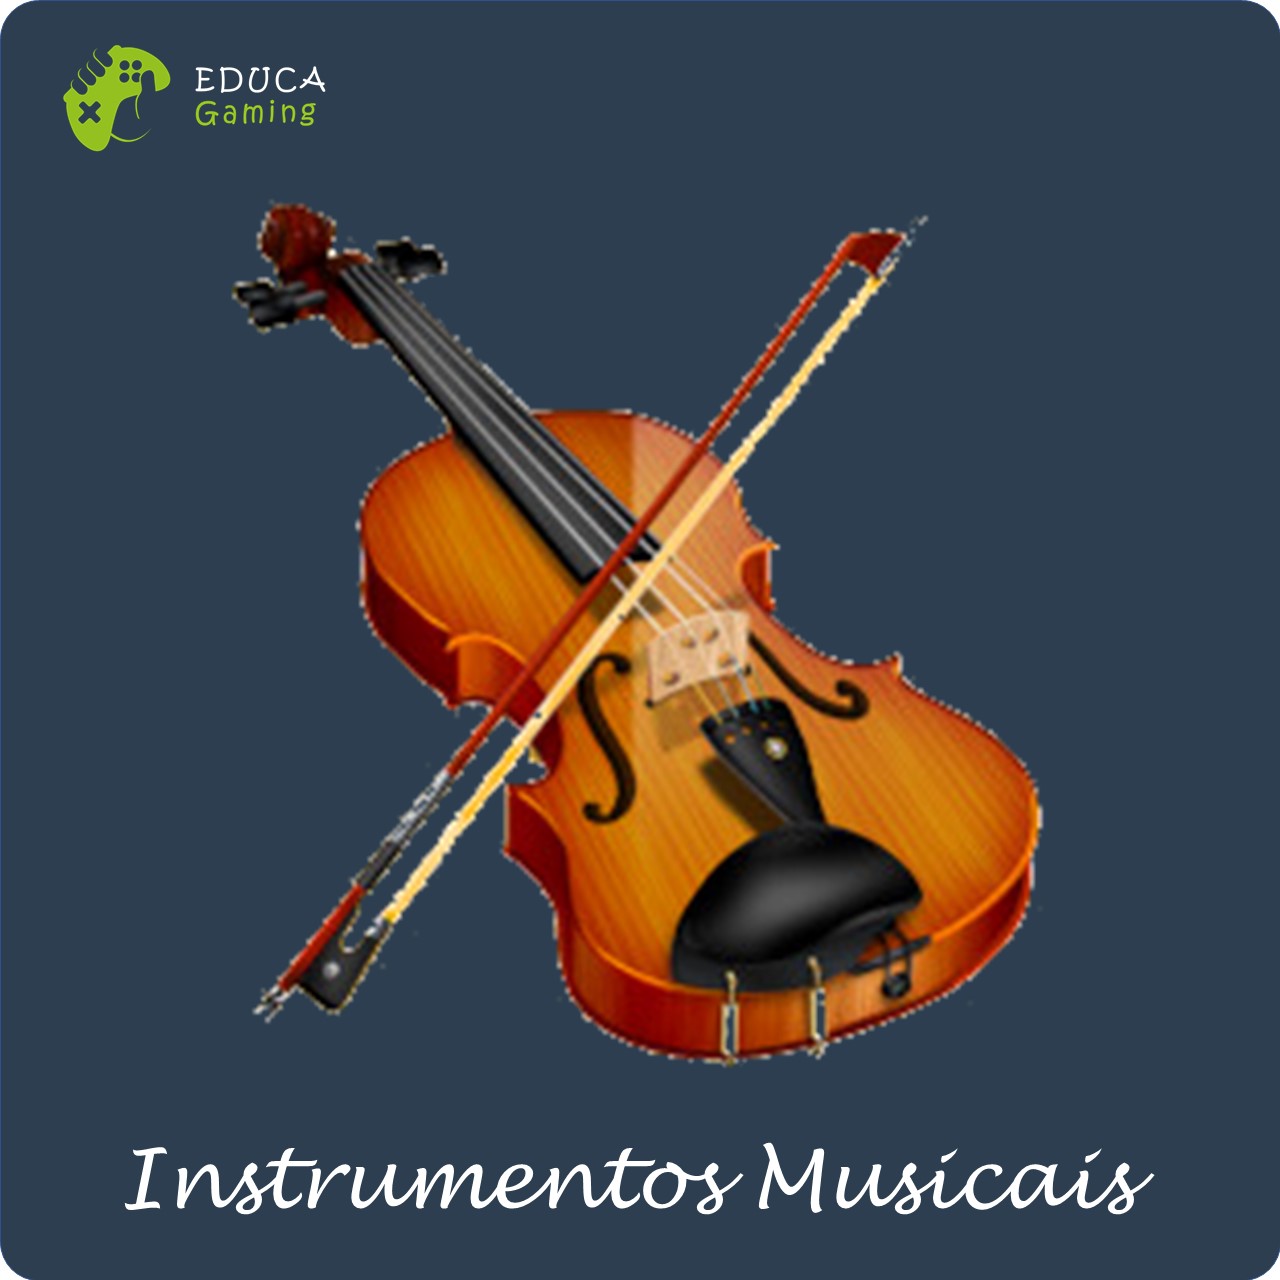 Jogo da Forca - Instrumentos musicais